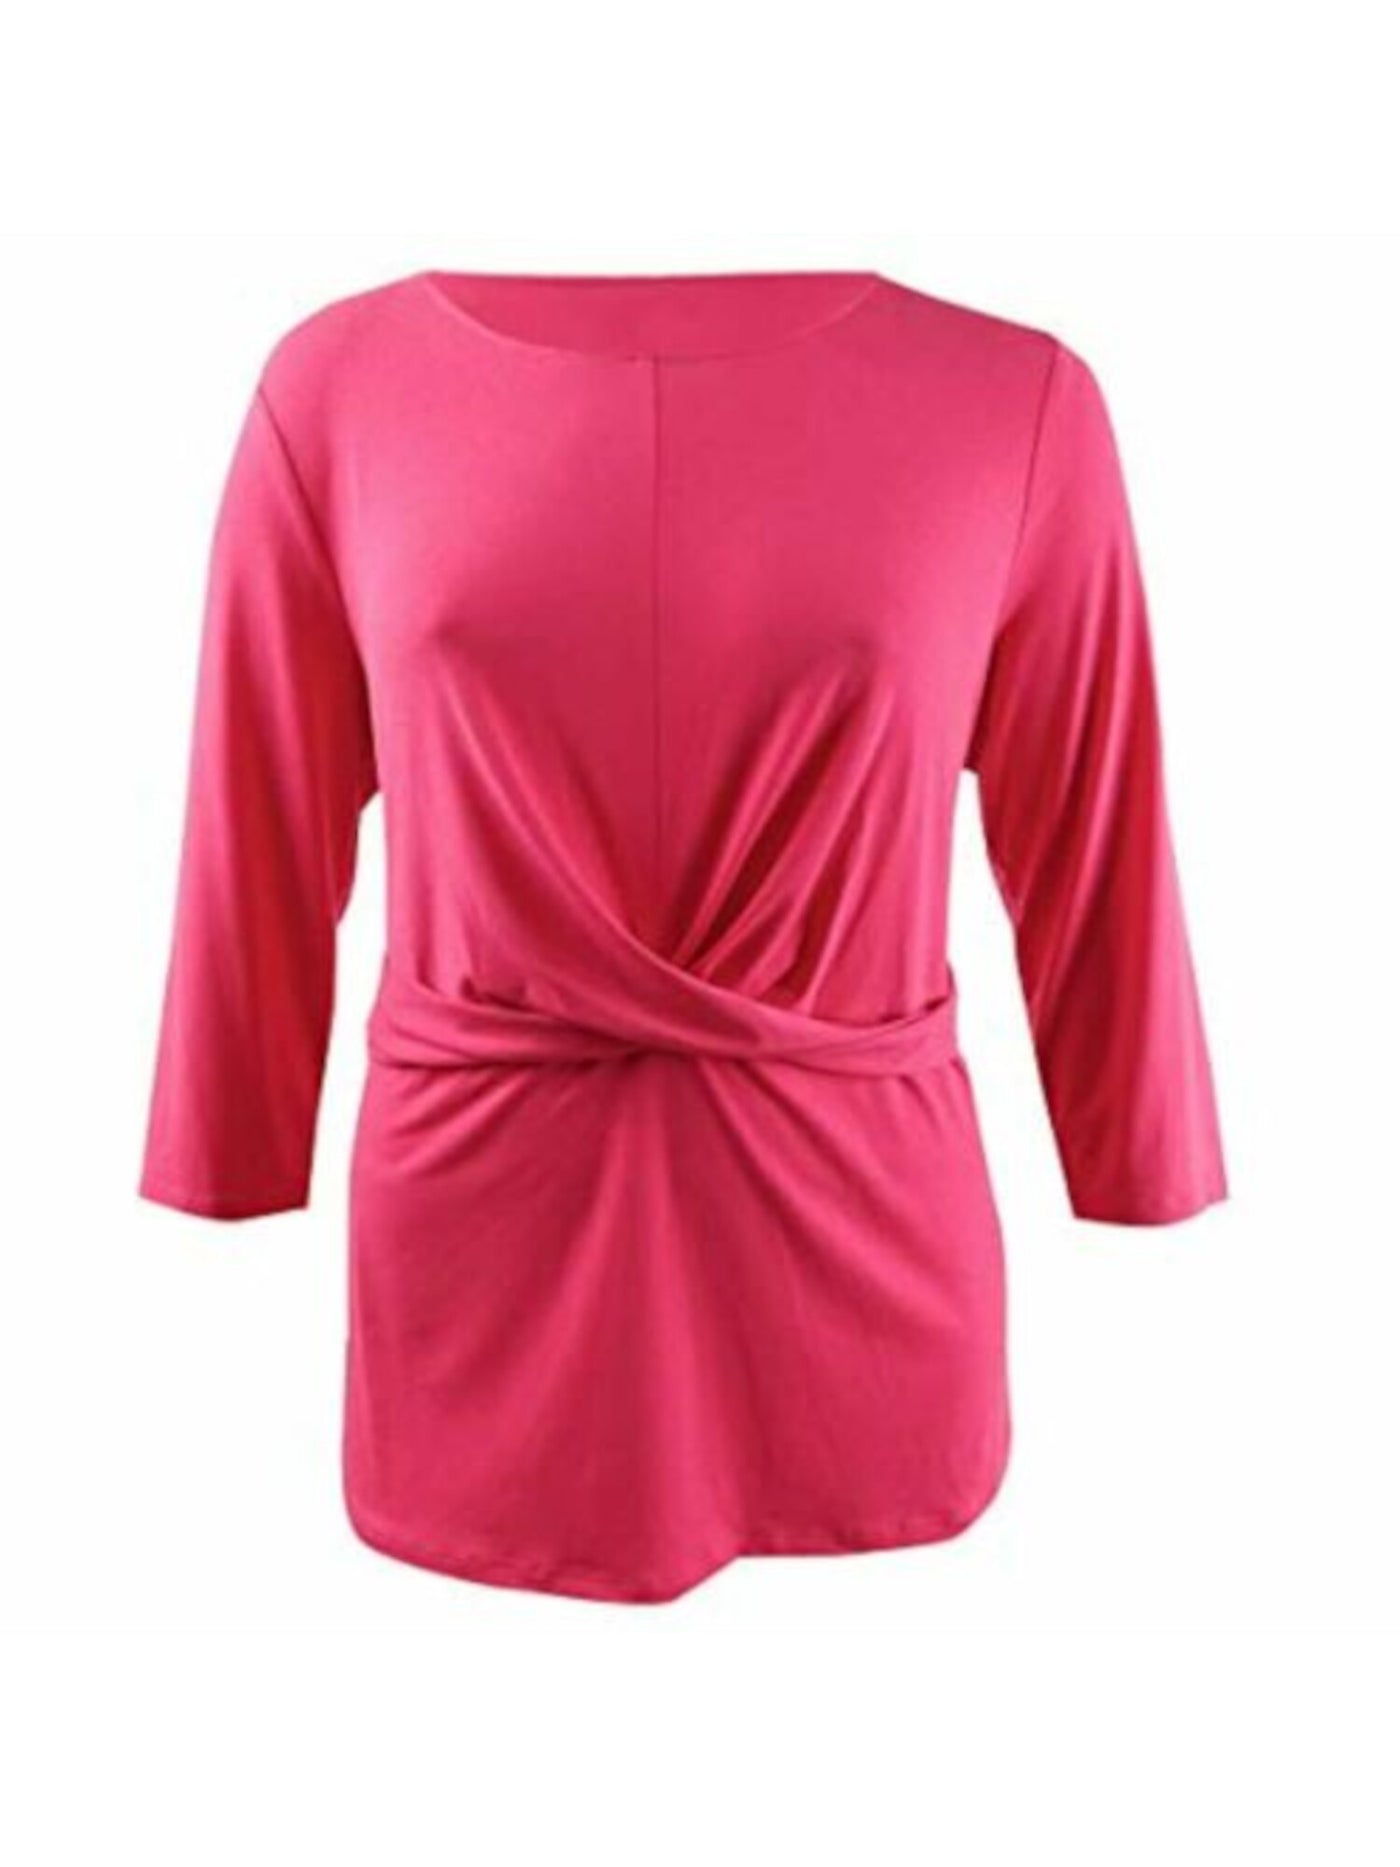 ALFANI Womens Pink Twist Front 3/4 Sleeve Scoop Neck Top Size: S